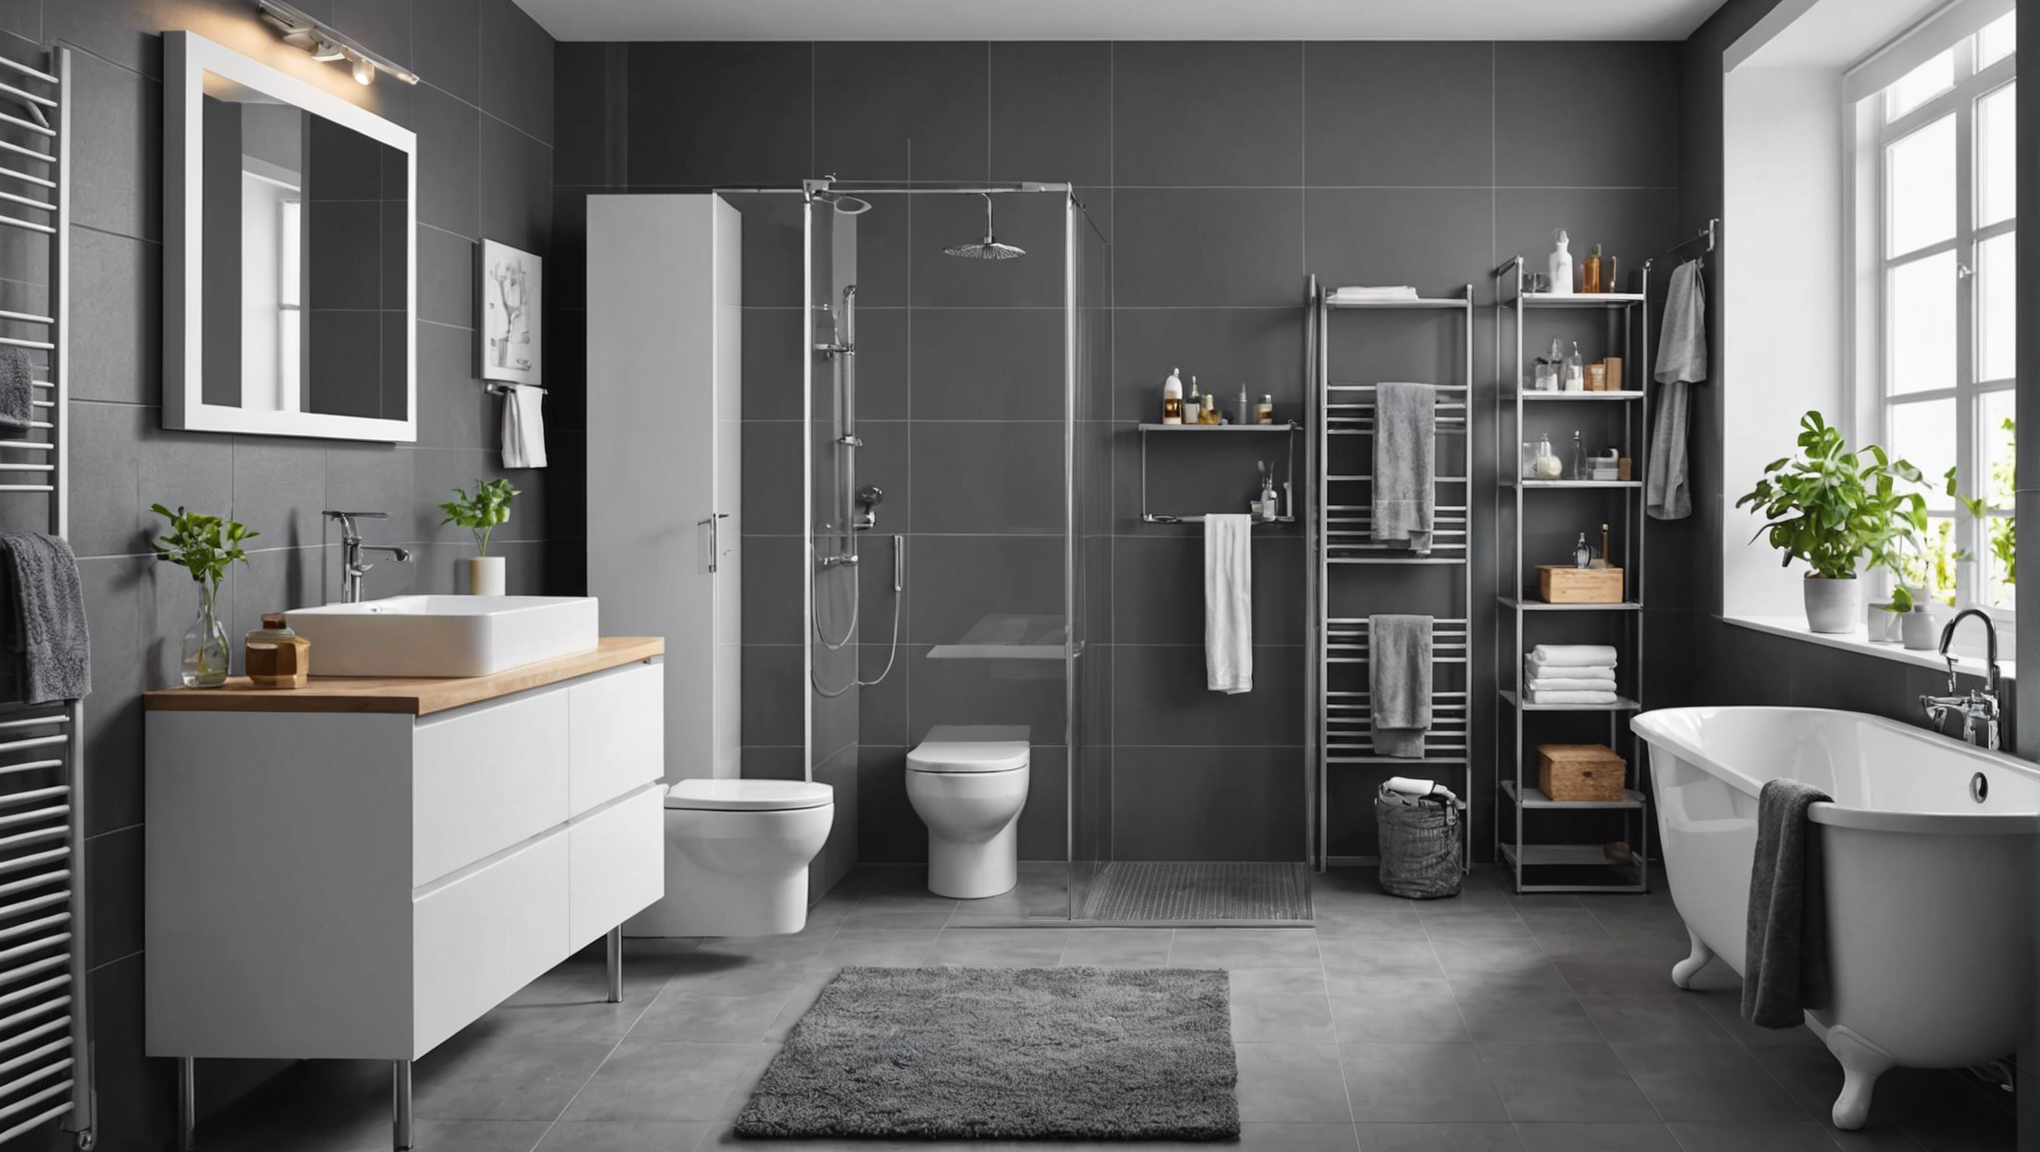 découvrez nos conseils pour choisir le meilleur meuble de salle de bain chez ikea et optimiser votre espace de rangement avec style.